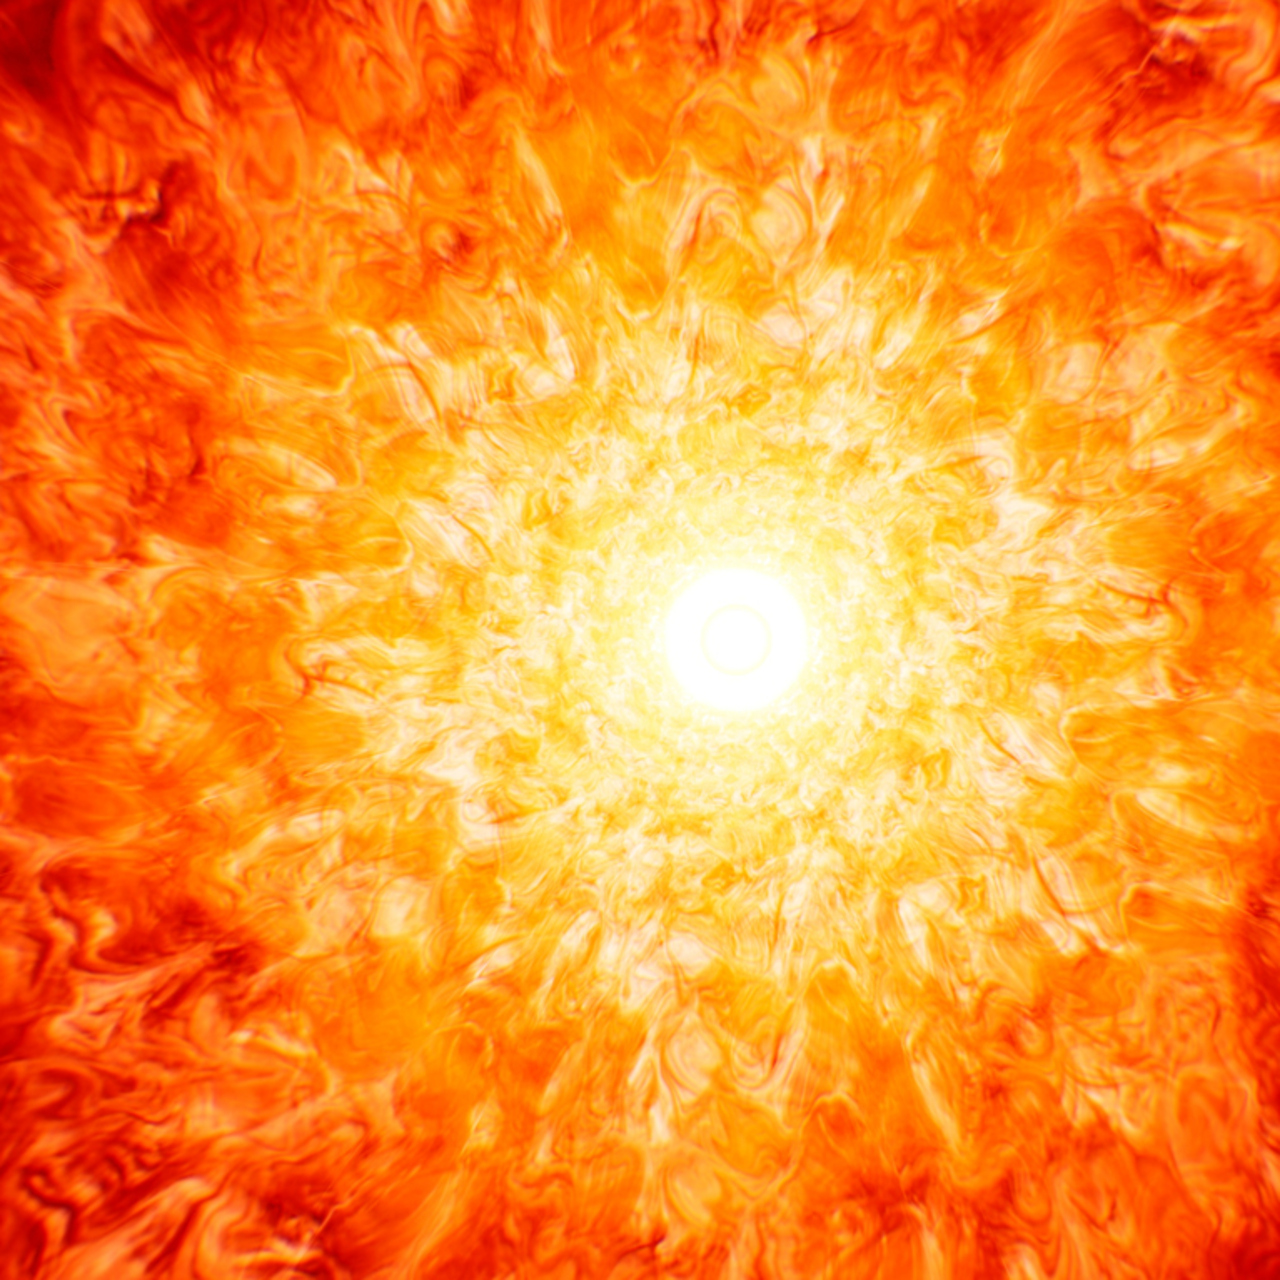 Güneş patlaması nedir?